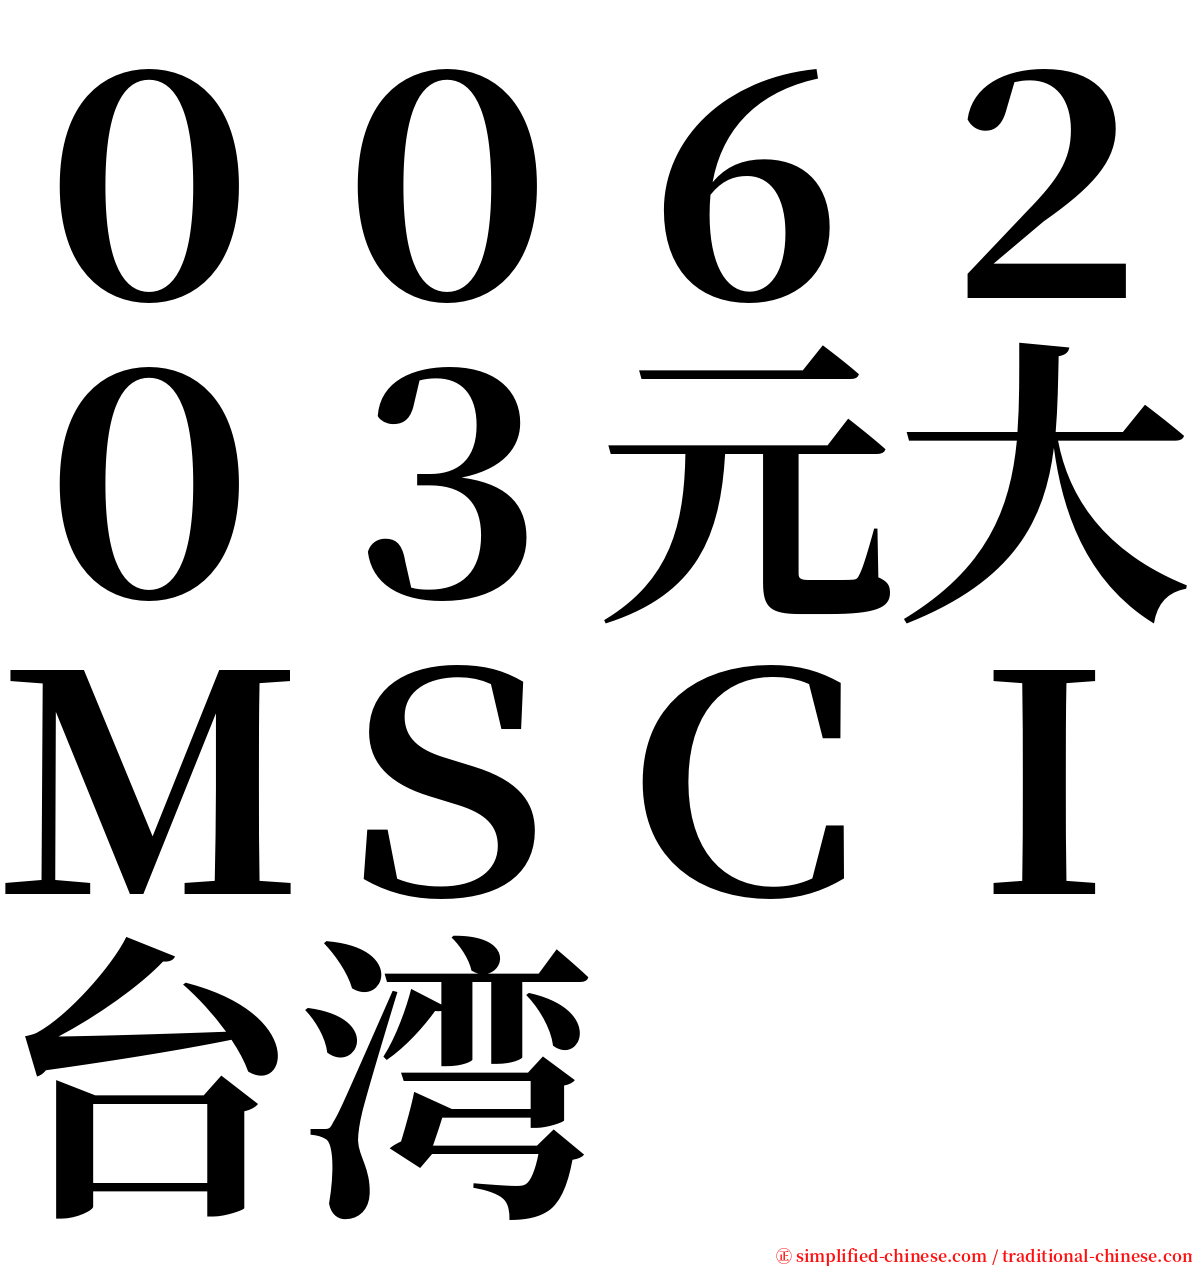 ００６２０３元大ＭＳＣＩ台湾 serif font